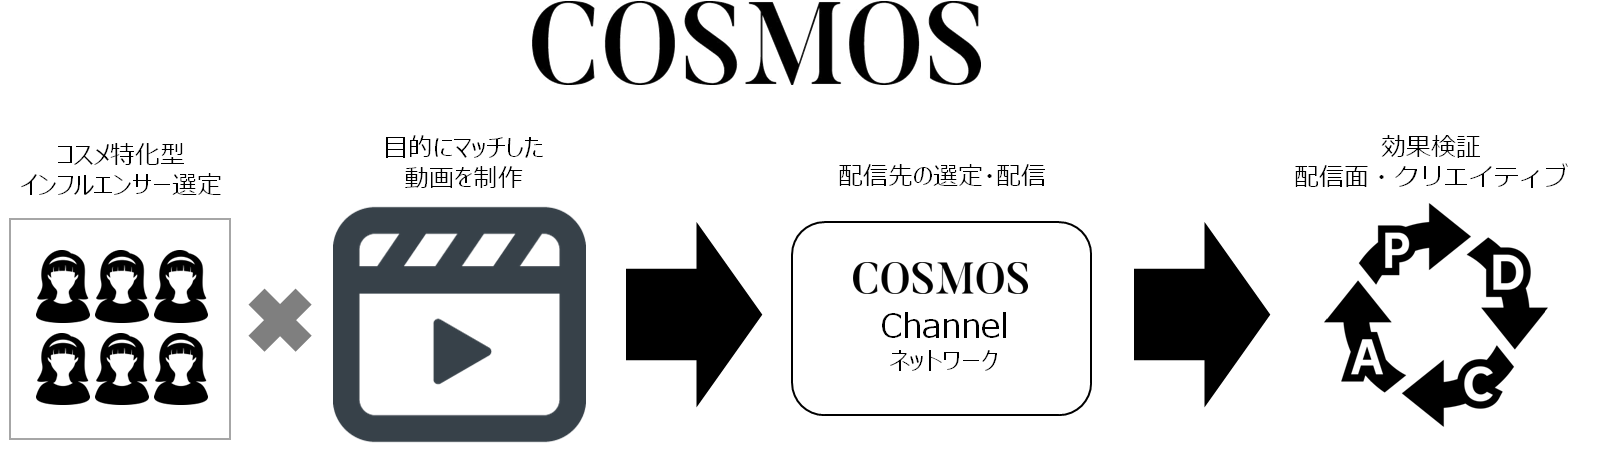 サイバー・バズ、コスメに特化した動画コンテンツ配信サービス「COSMOS」提供開始